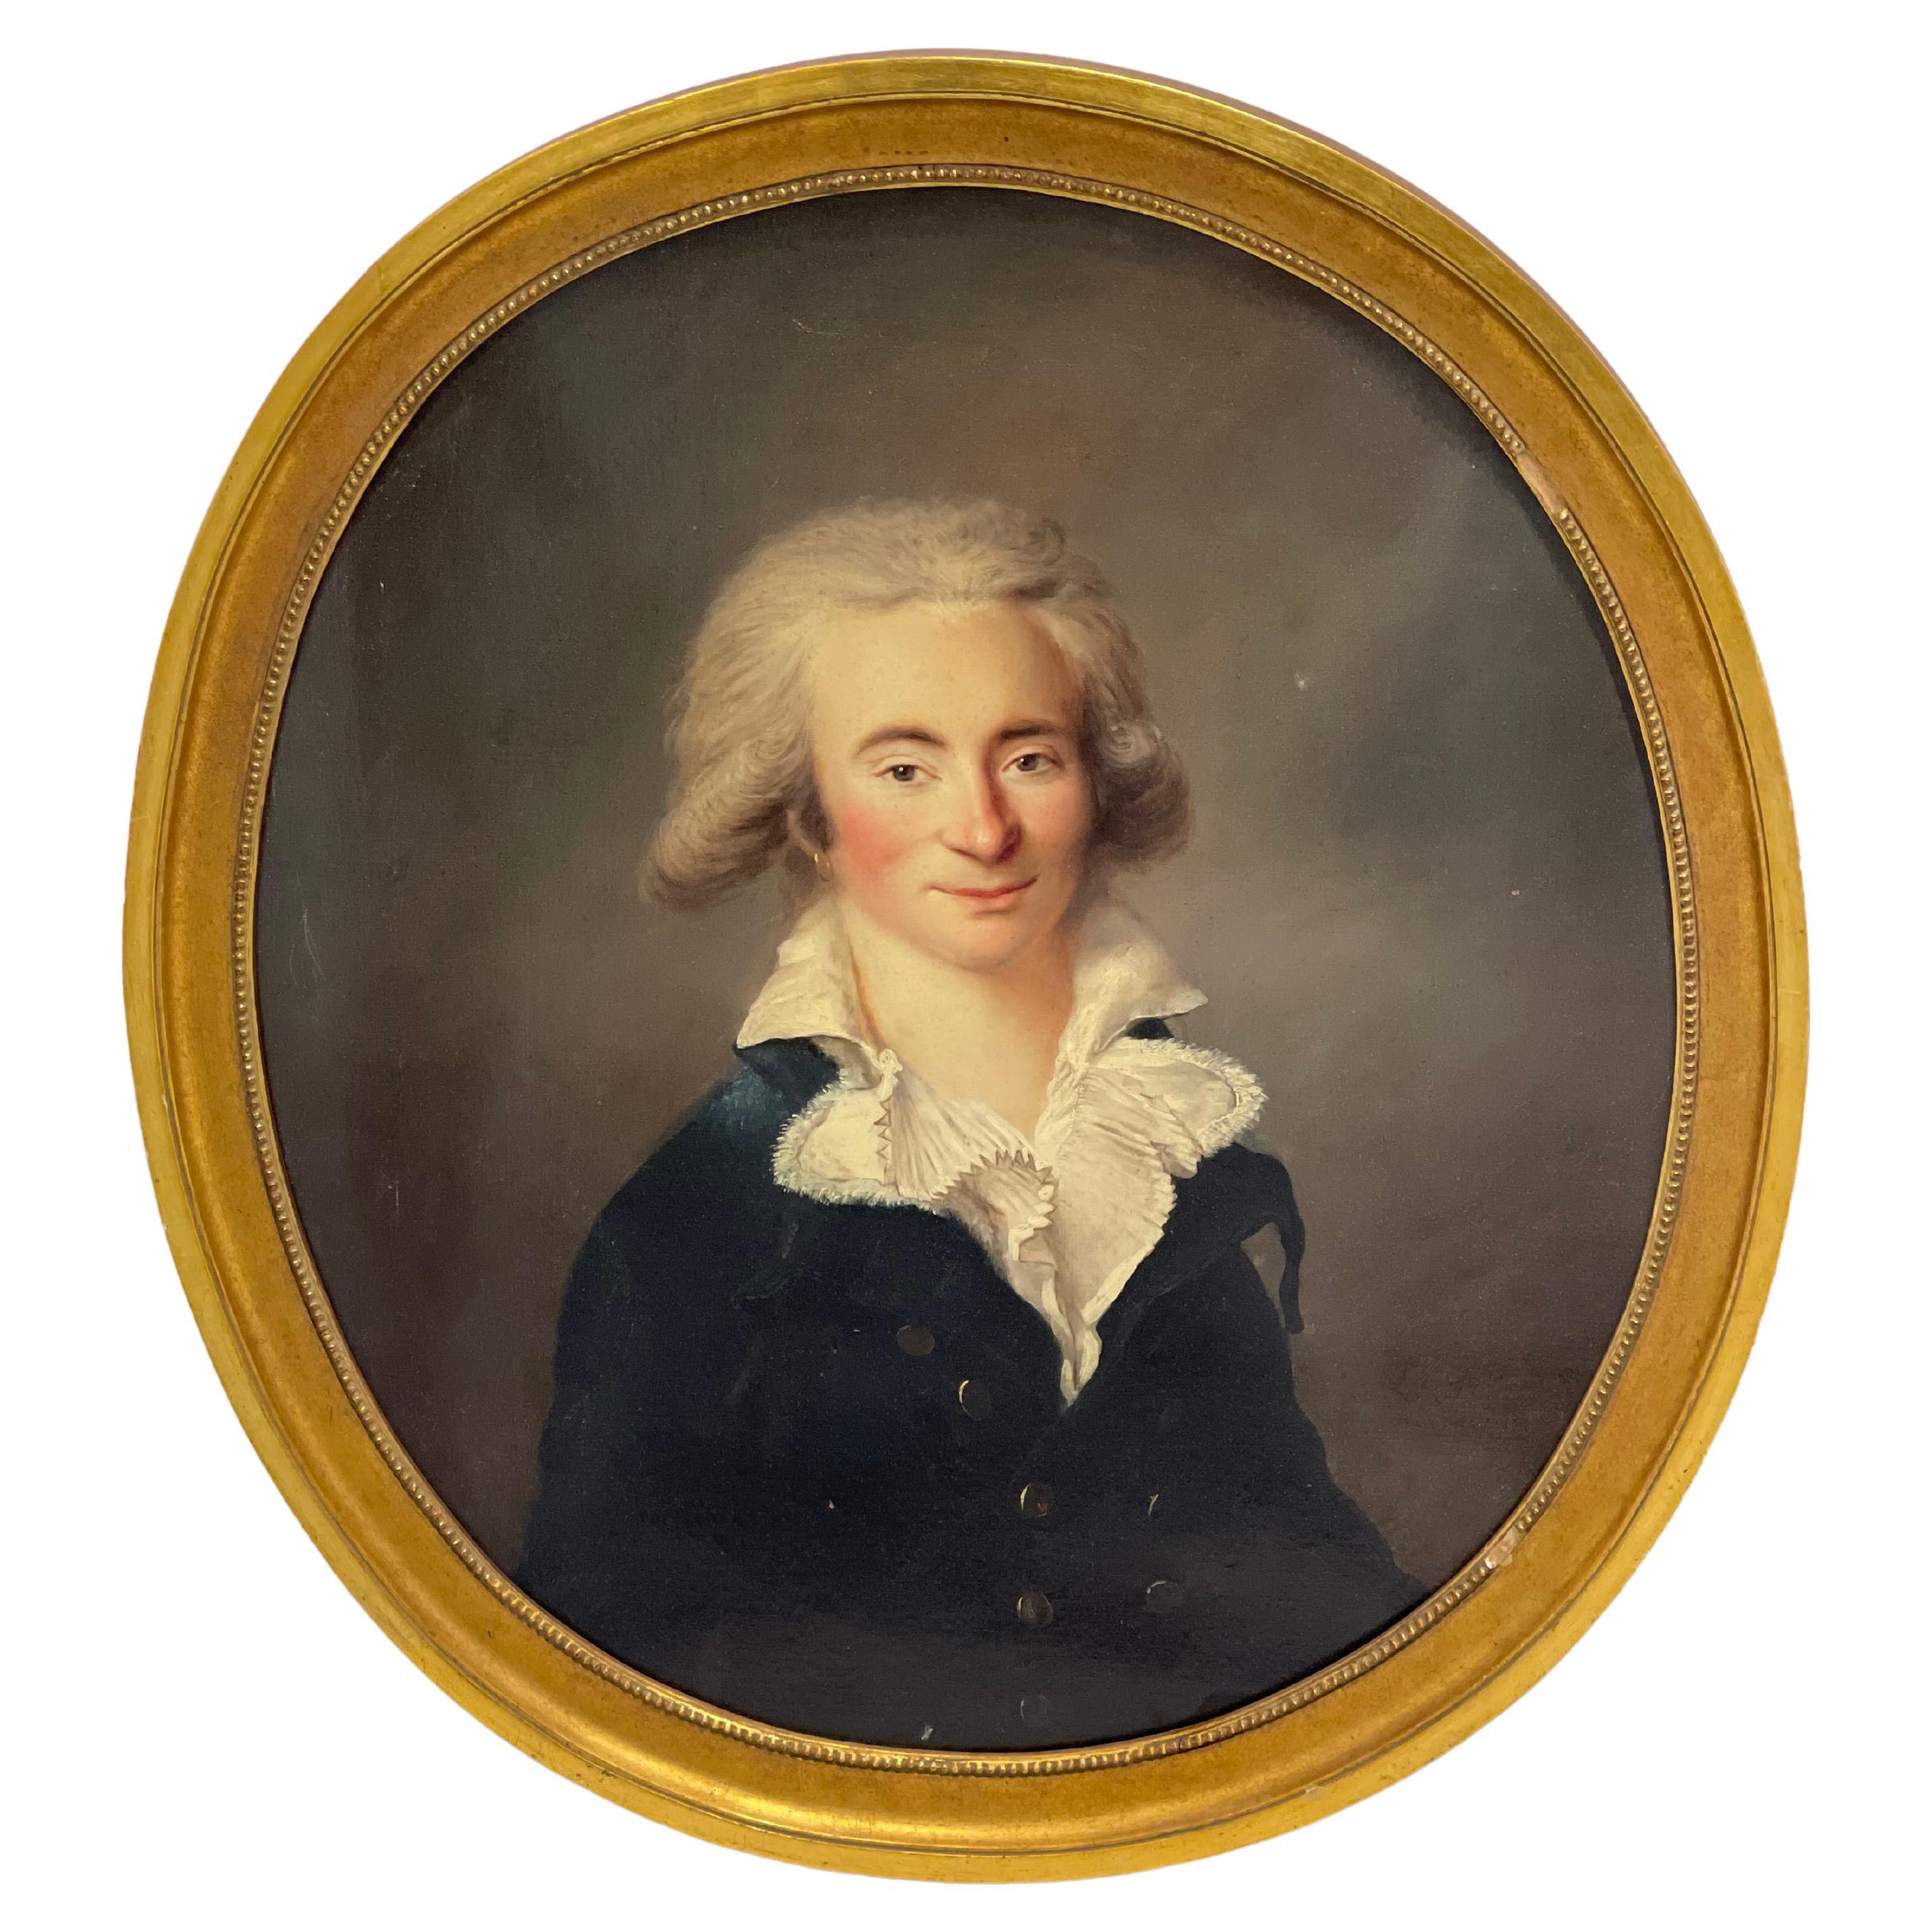 Französisches Porträt aus dem 18. Jahrhundert, signiert Legrand, 1790